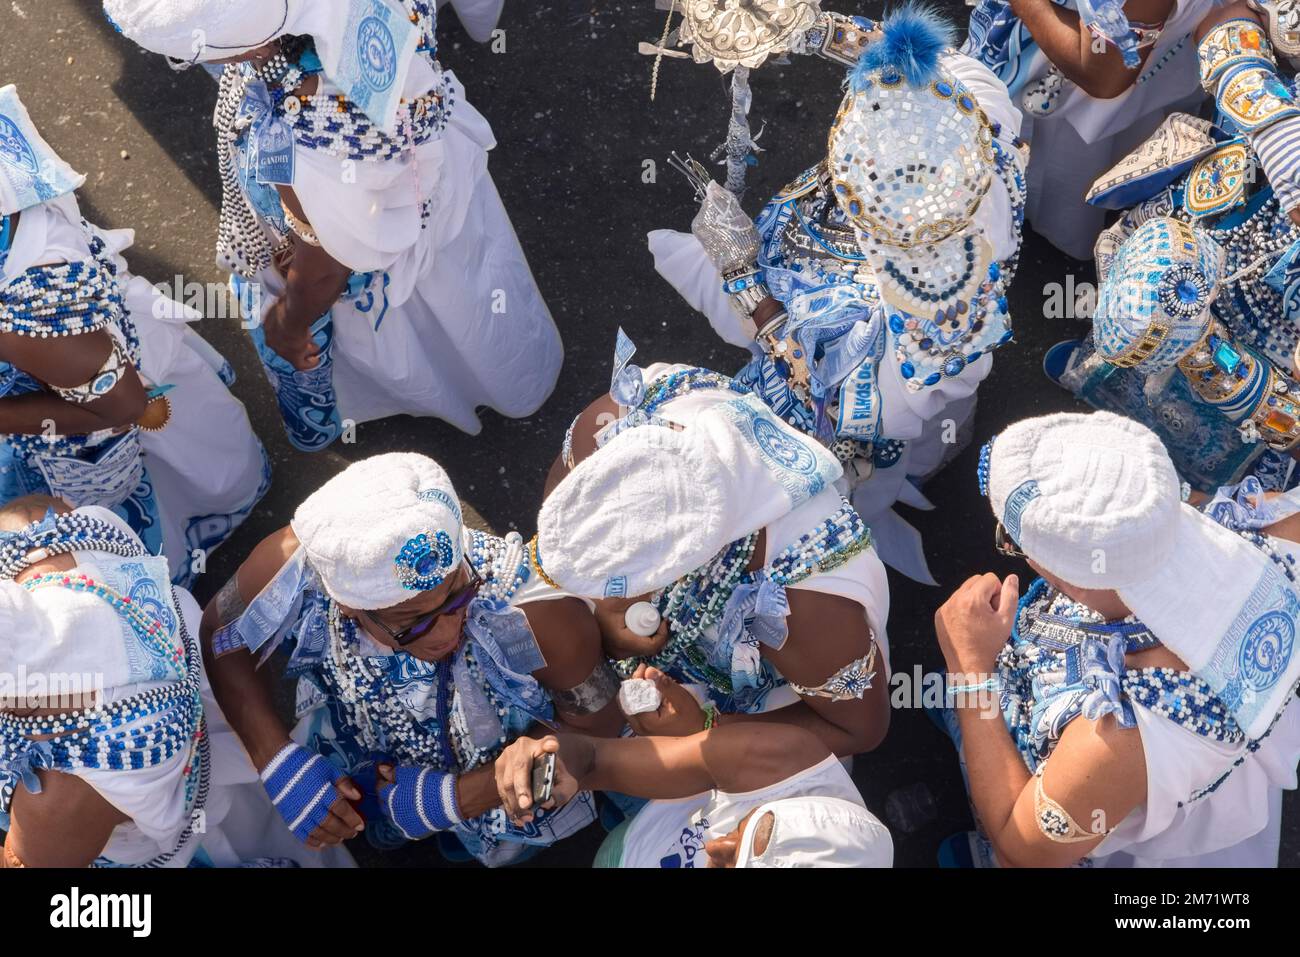 Carnival in Salvador, Bahia